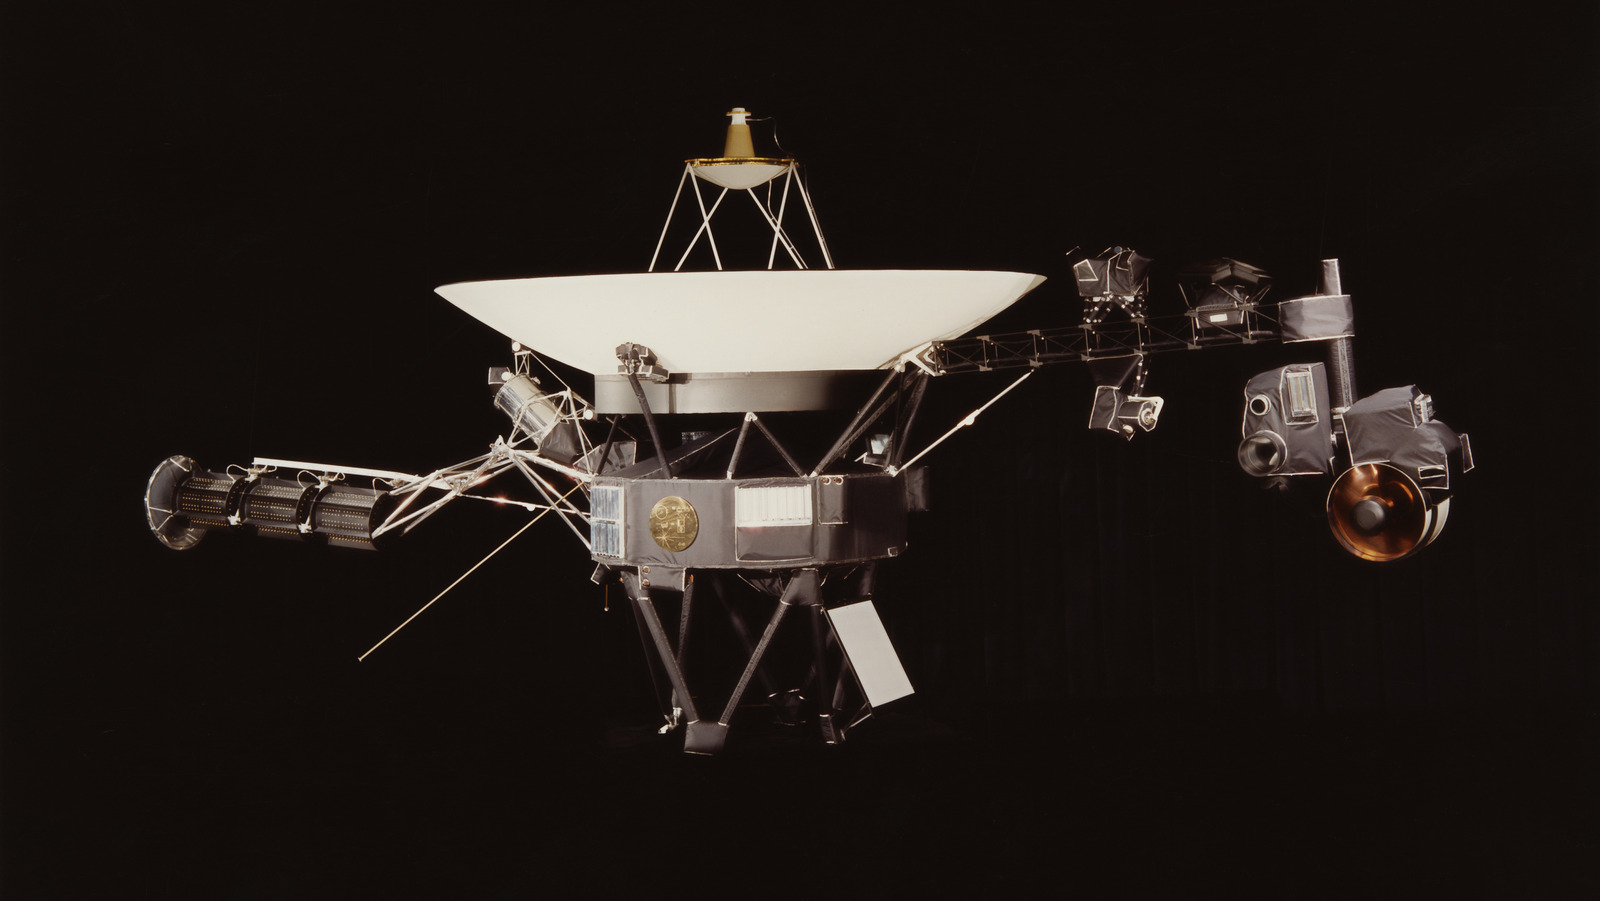 Una mirada a la innovadora misión Voyager 1 de la NASA